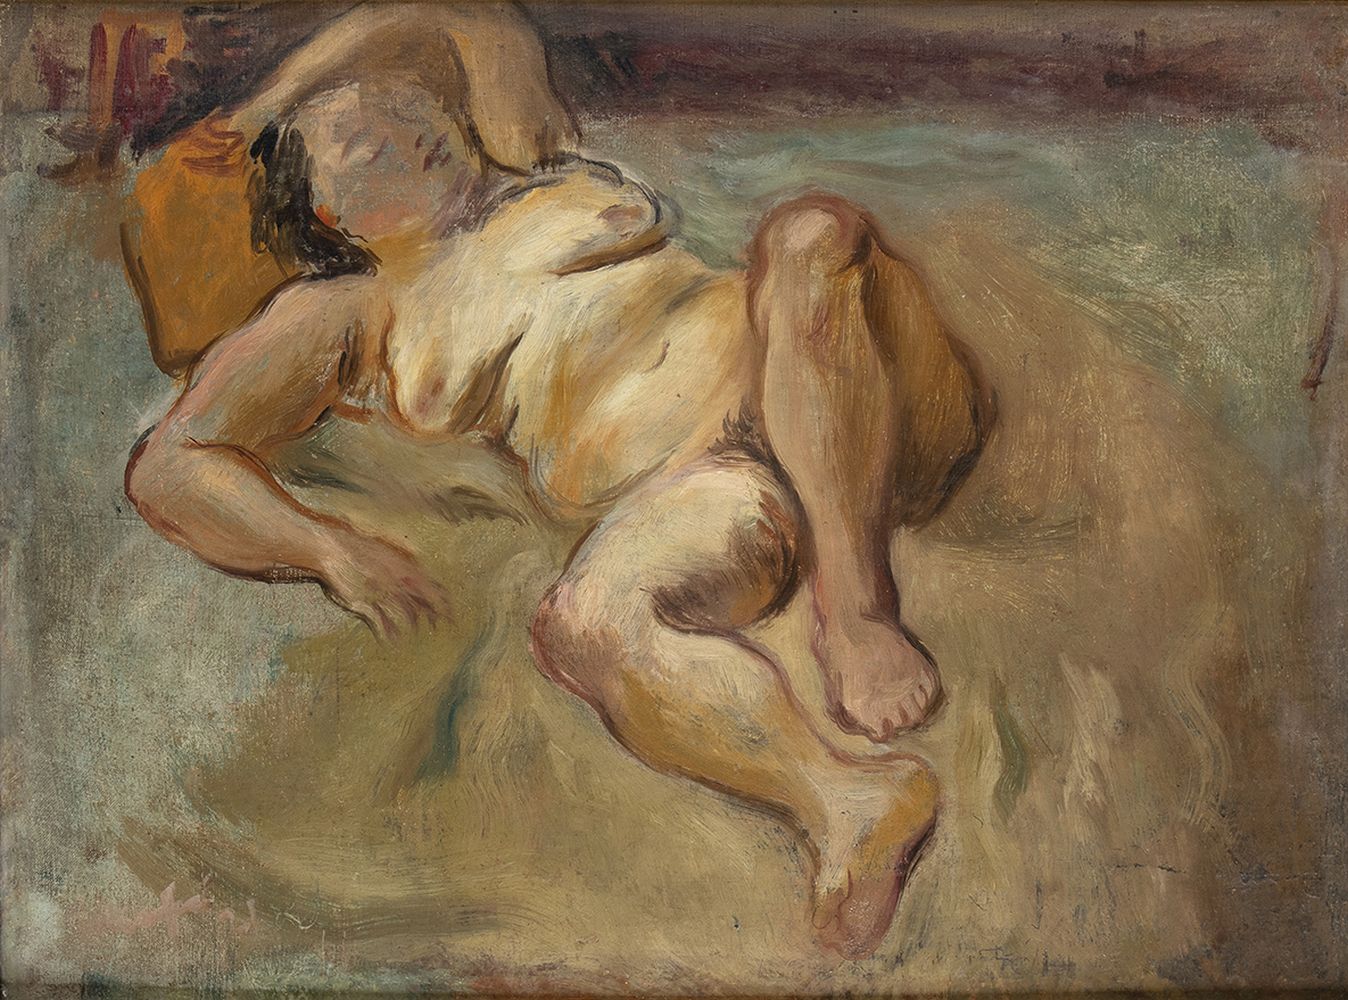 MARIO MAFAI (Rome, 1902 - 1965): Nude, 1931